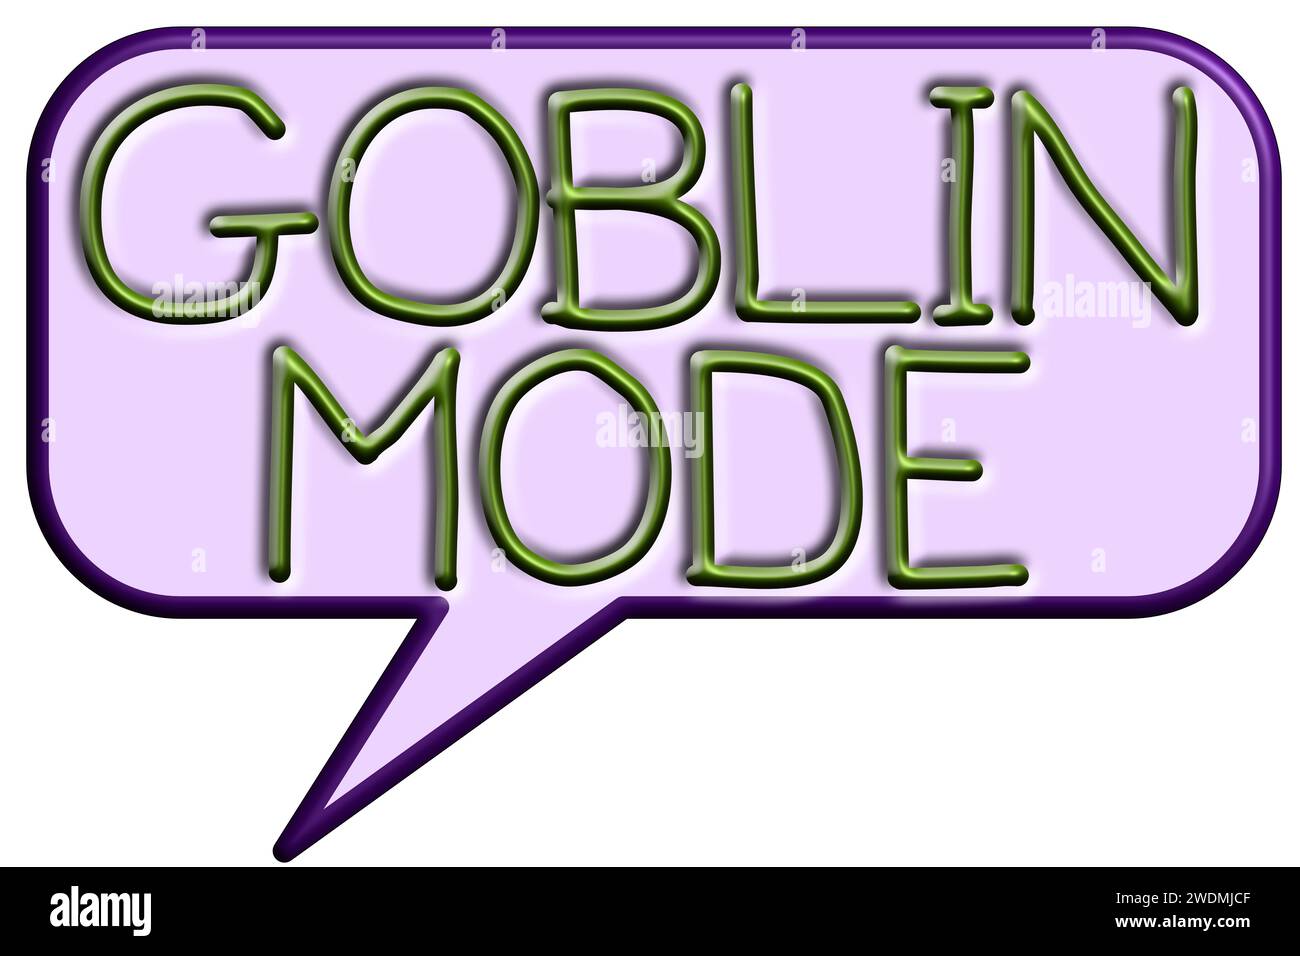 Goblin-Modus, Illustrationsphrase, die selbstsüchtiges, faules Verhalten bedeutet Stockfoto